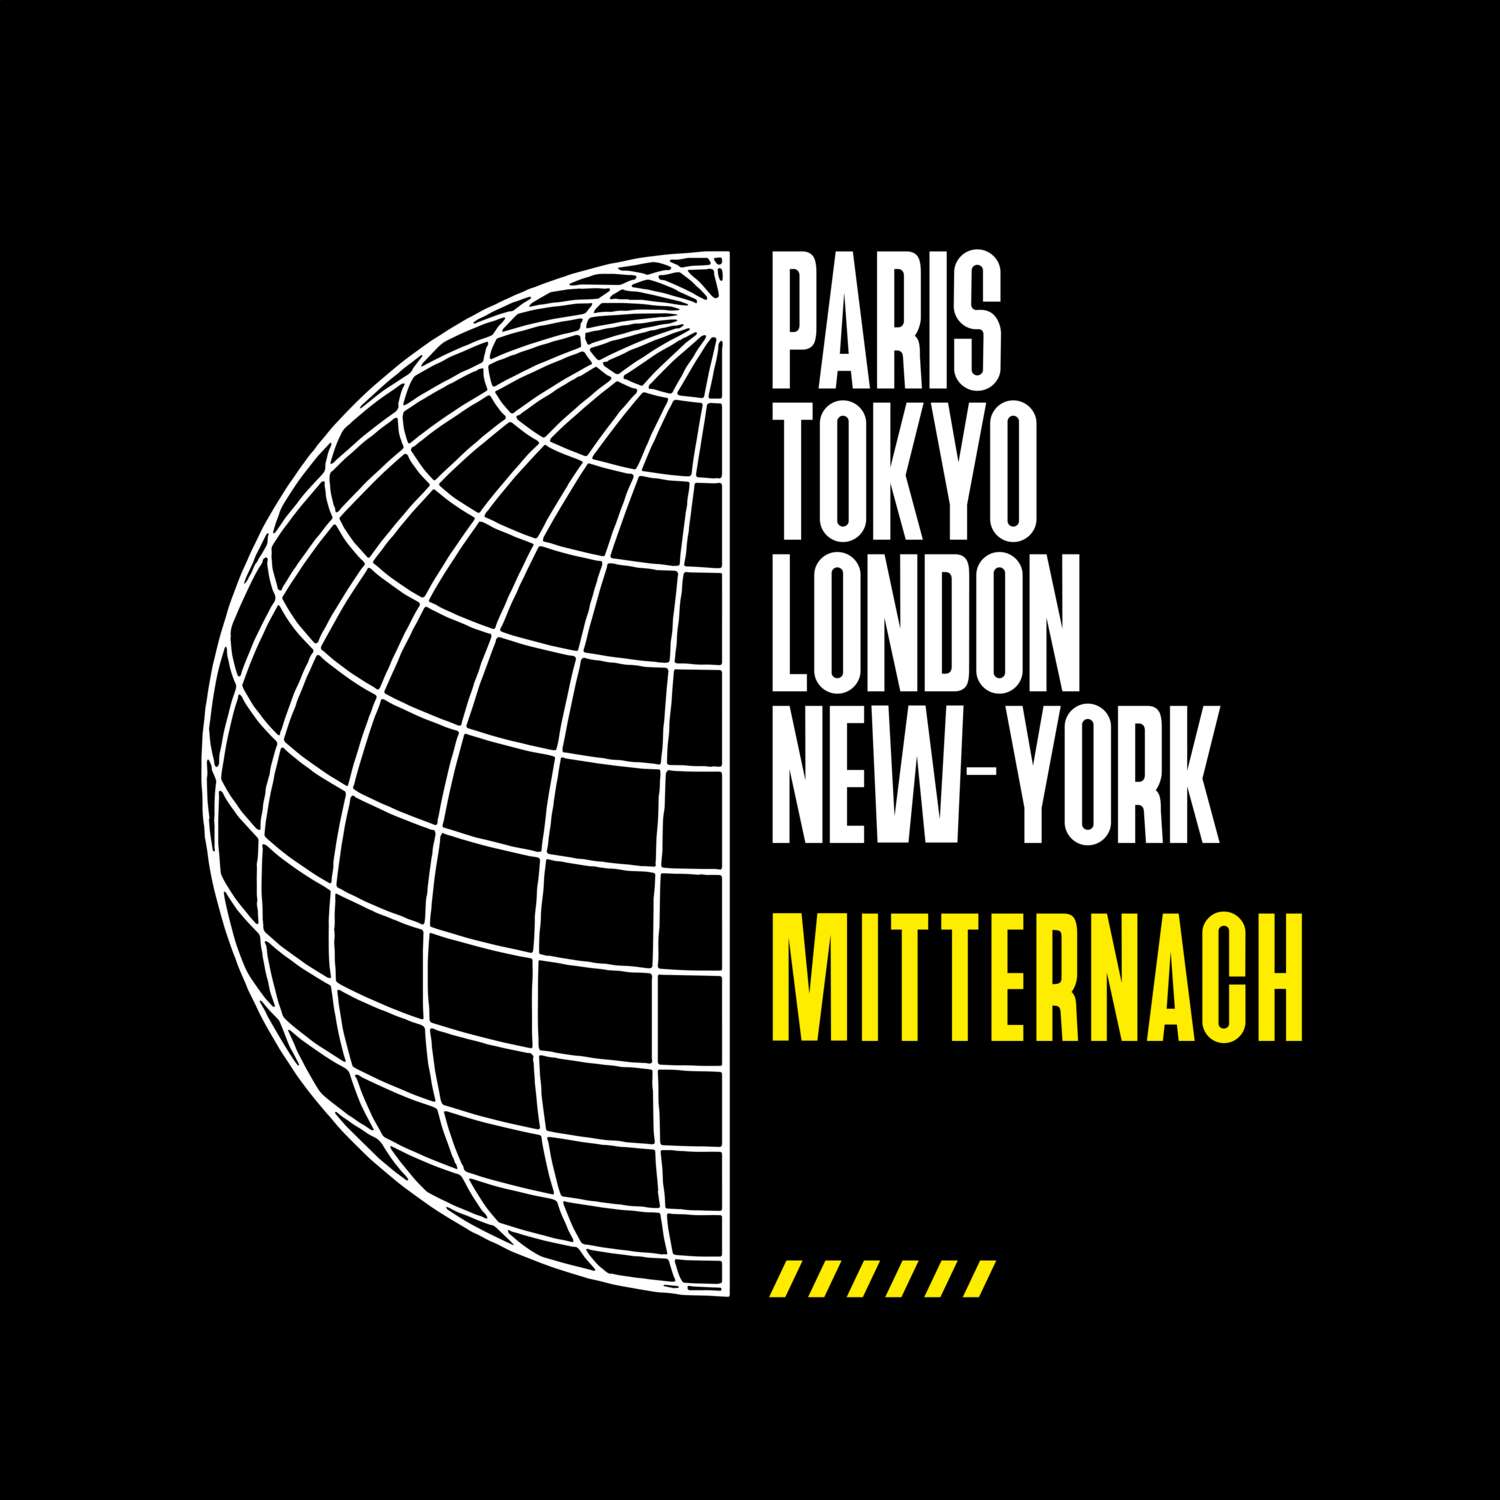 Mitternach T-Shirt »Paris Tokyo London«